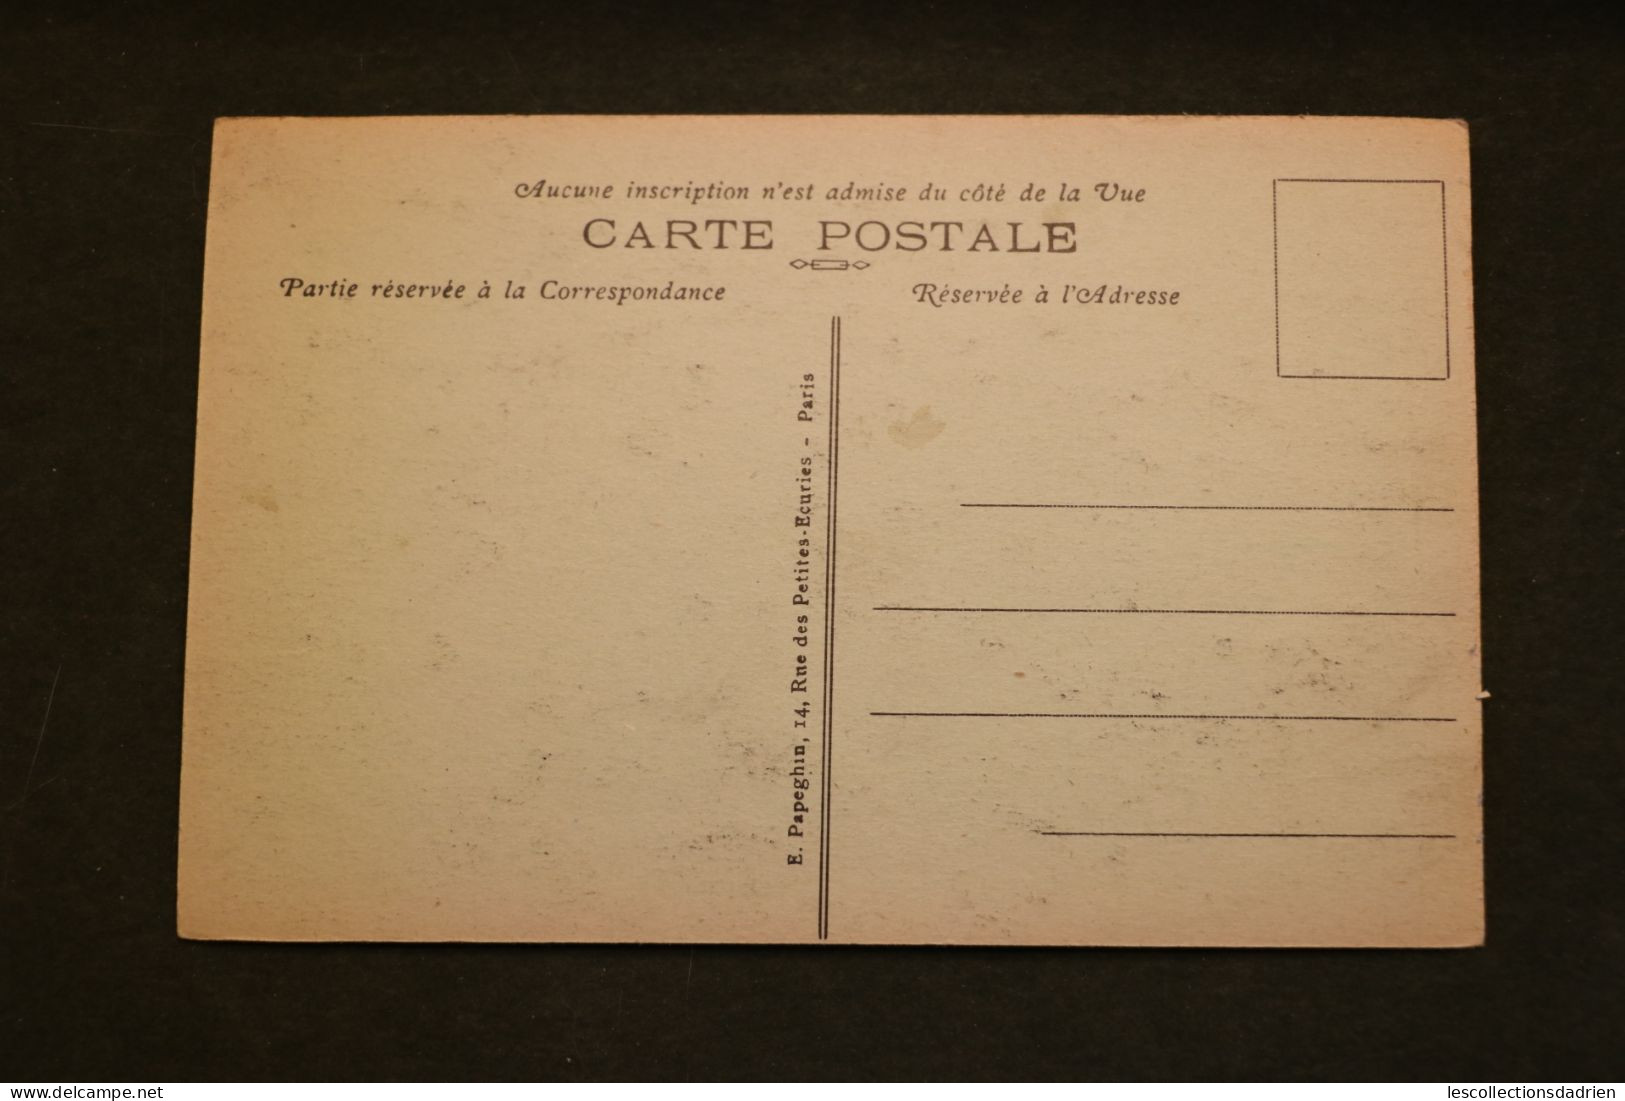 Carte postale ancienne - Paris -  le musé de Cluny - museum